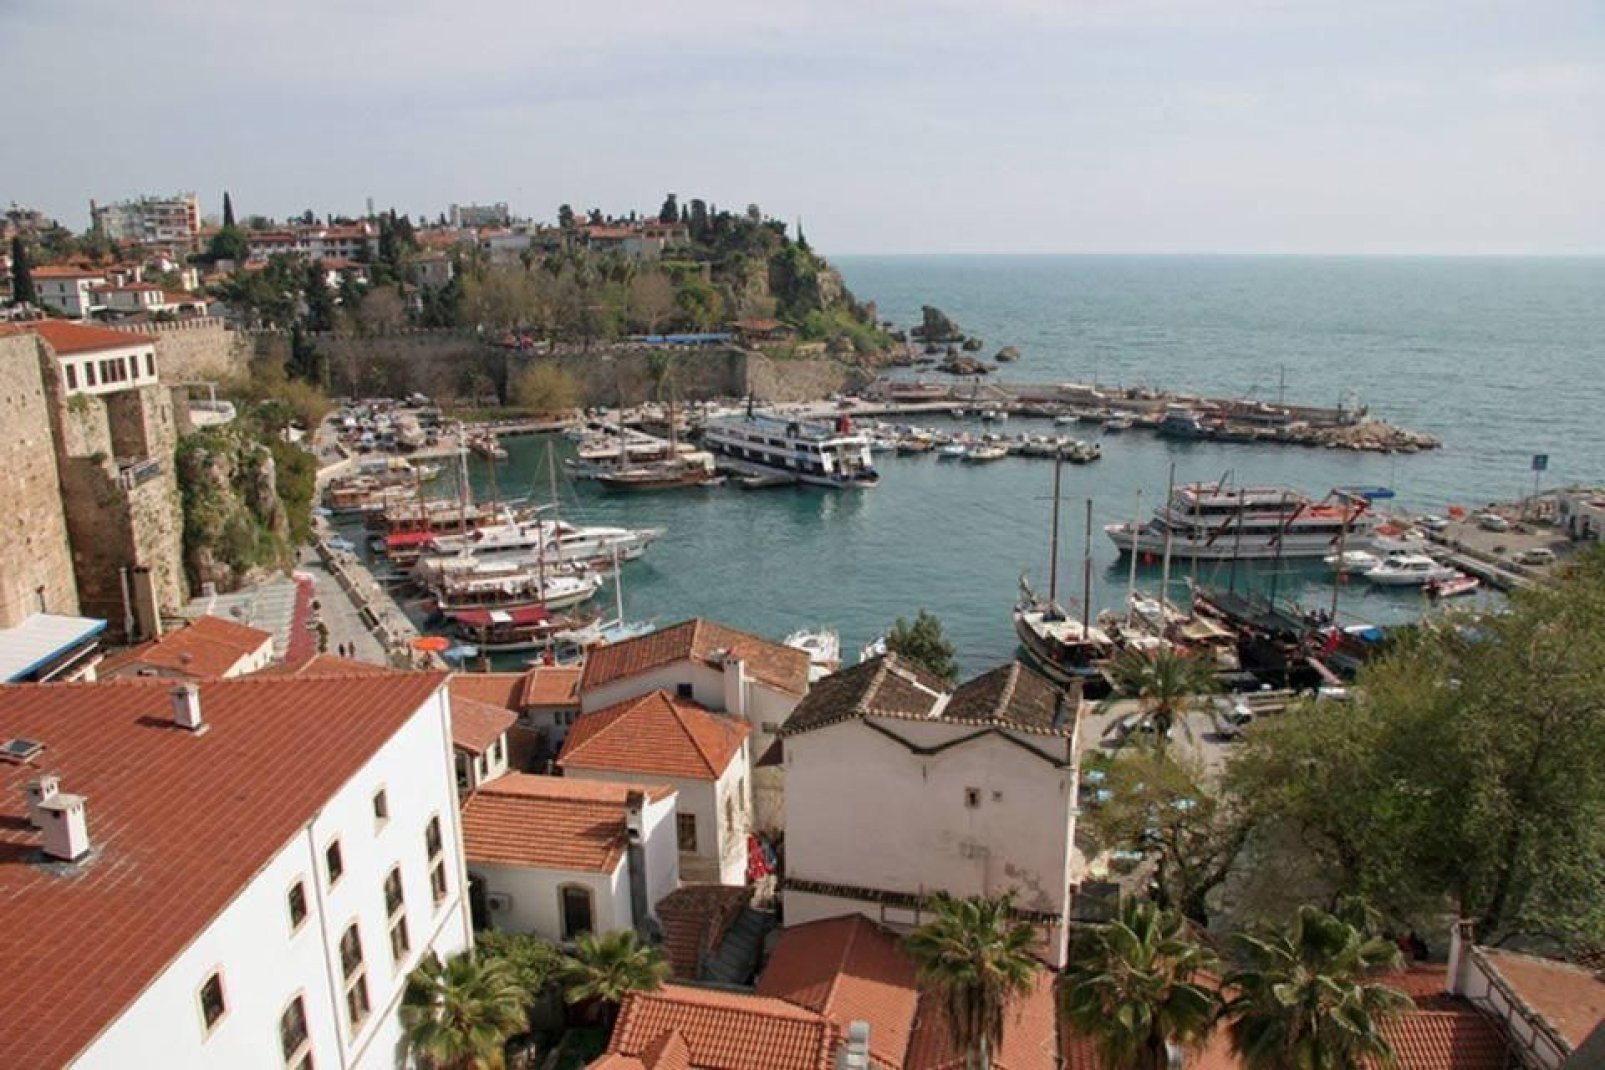 L'antico porto è stato attualmente trasformato in porticciolo turistico.